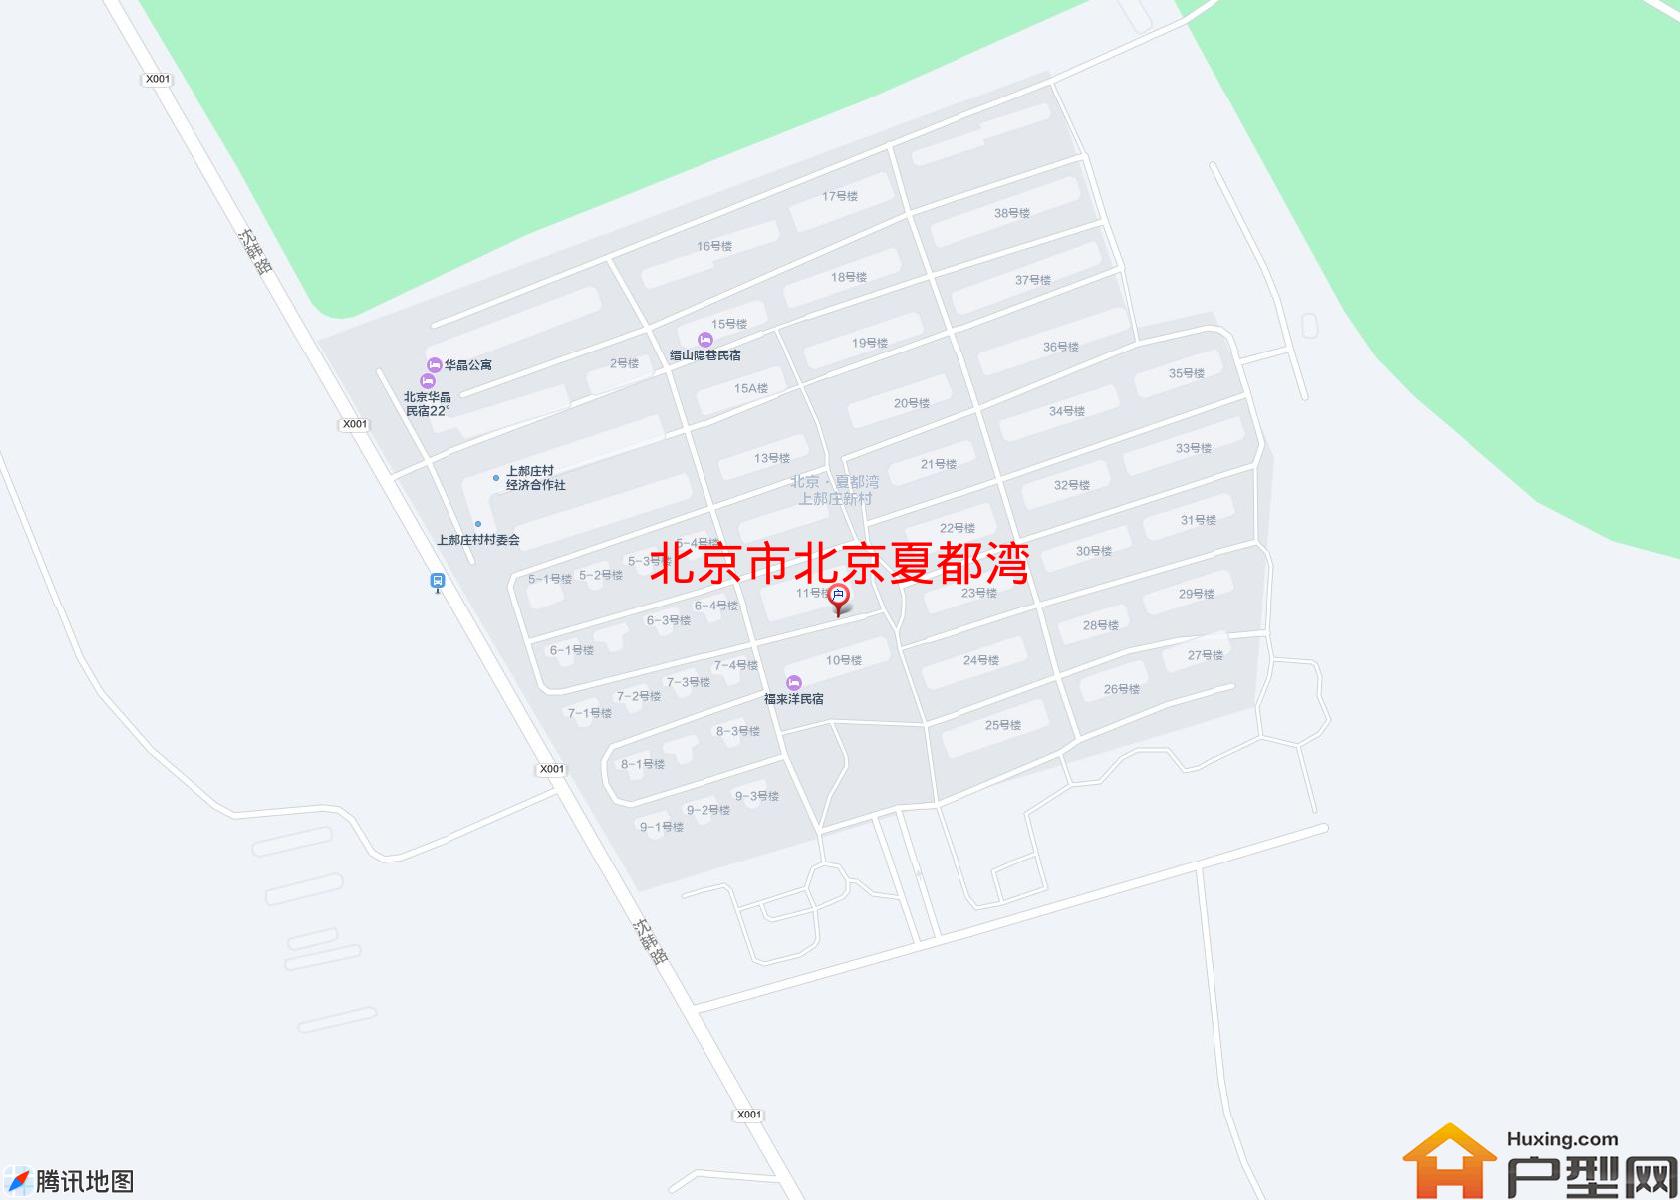 北京夏都湾小区 - 户型网